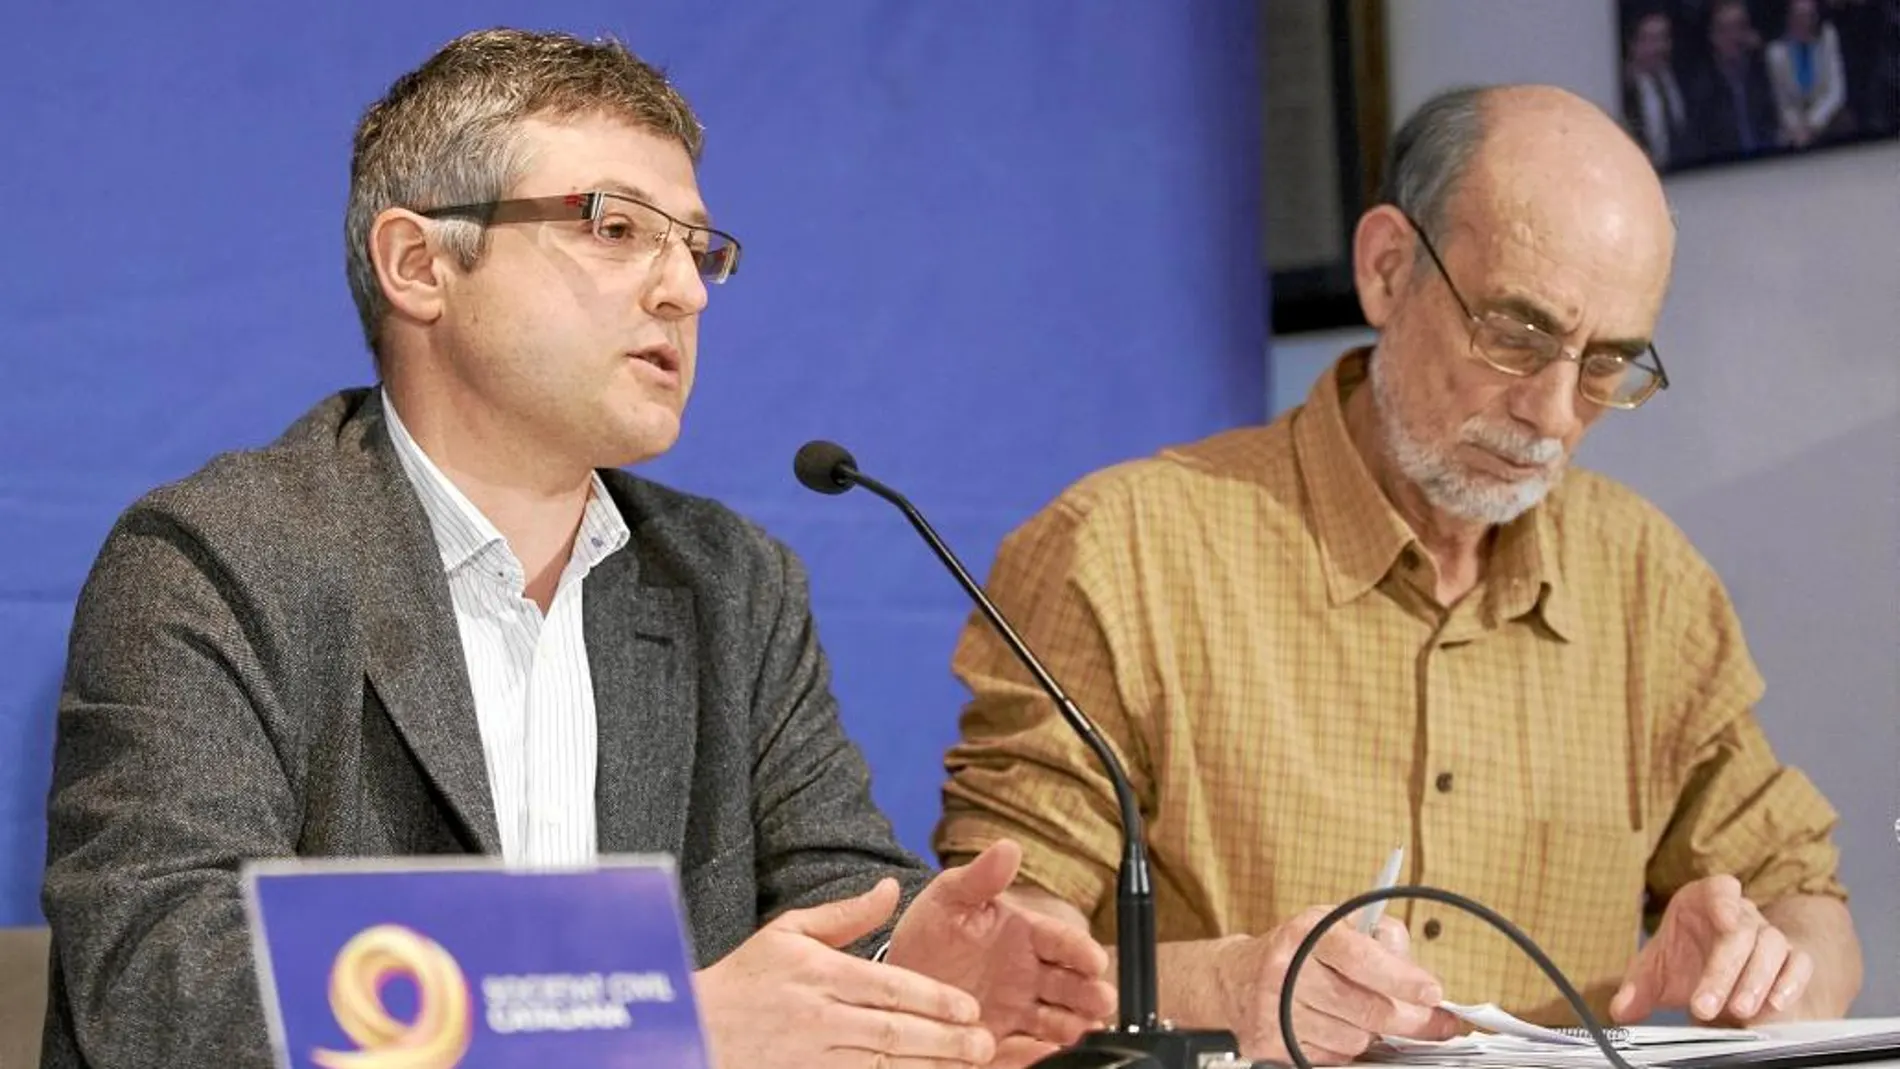 El vicepresidente de SCC, Joaquim Coll, presentó el documental junto al doctor en Ciencias Políticas Martín Alonso